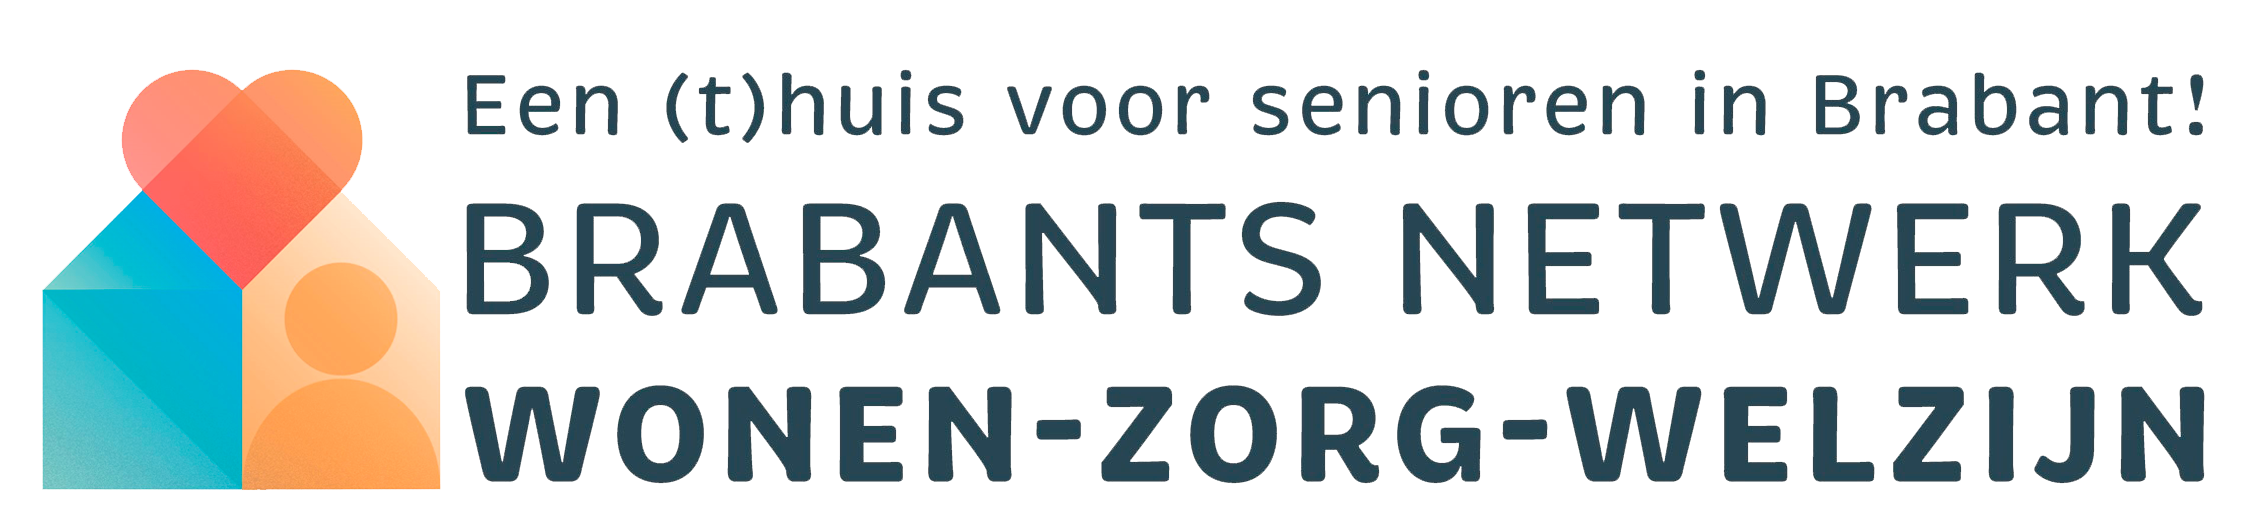 Lees meer over Brabants Netwerk 'wonen-zorg-welzijn'